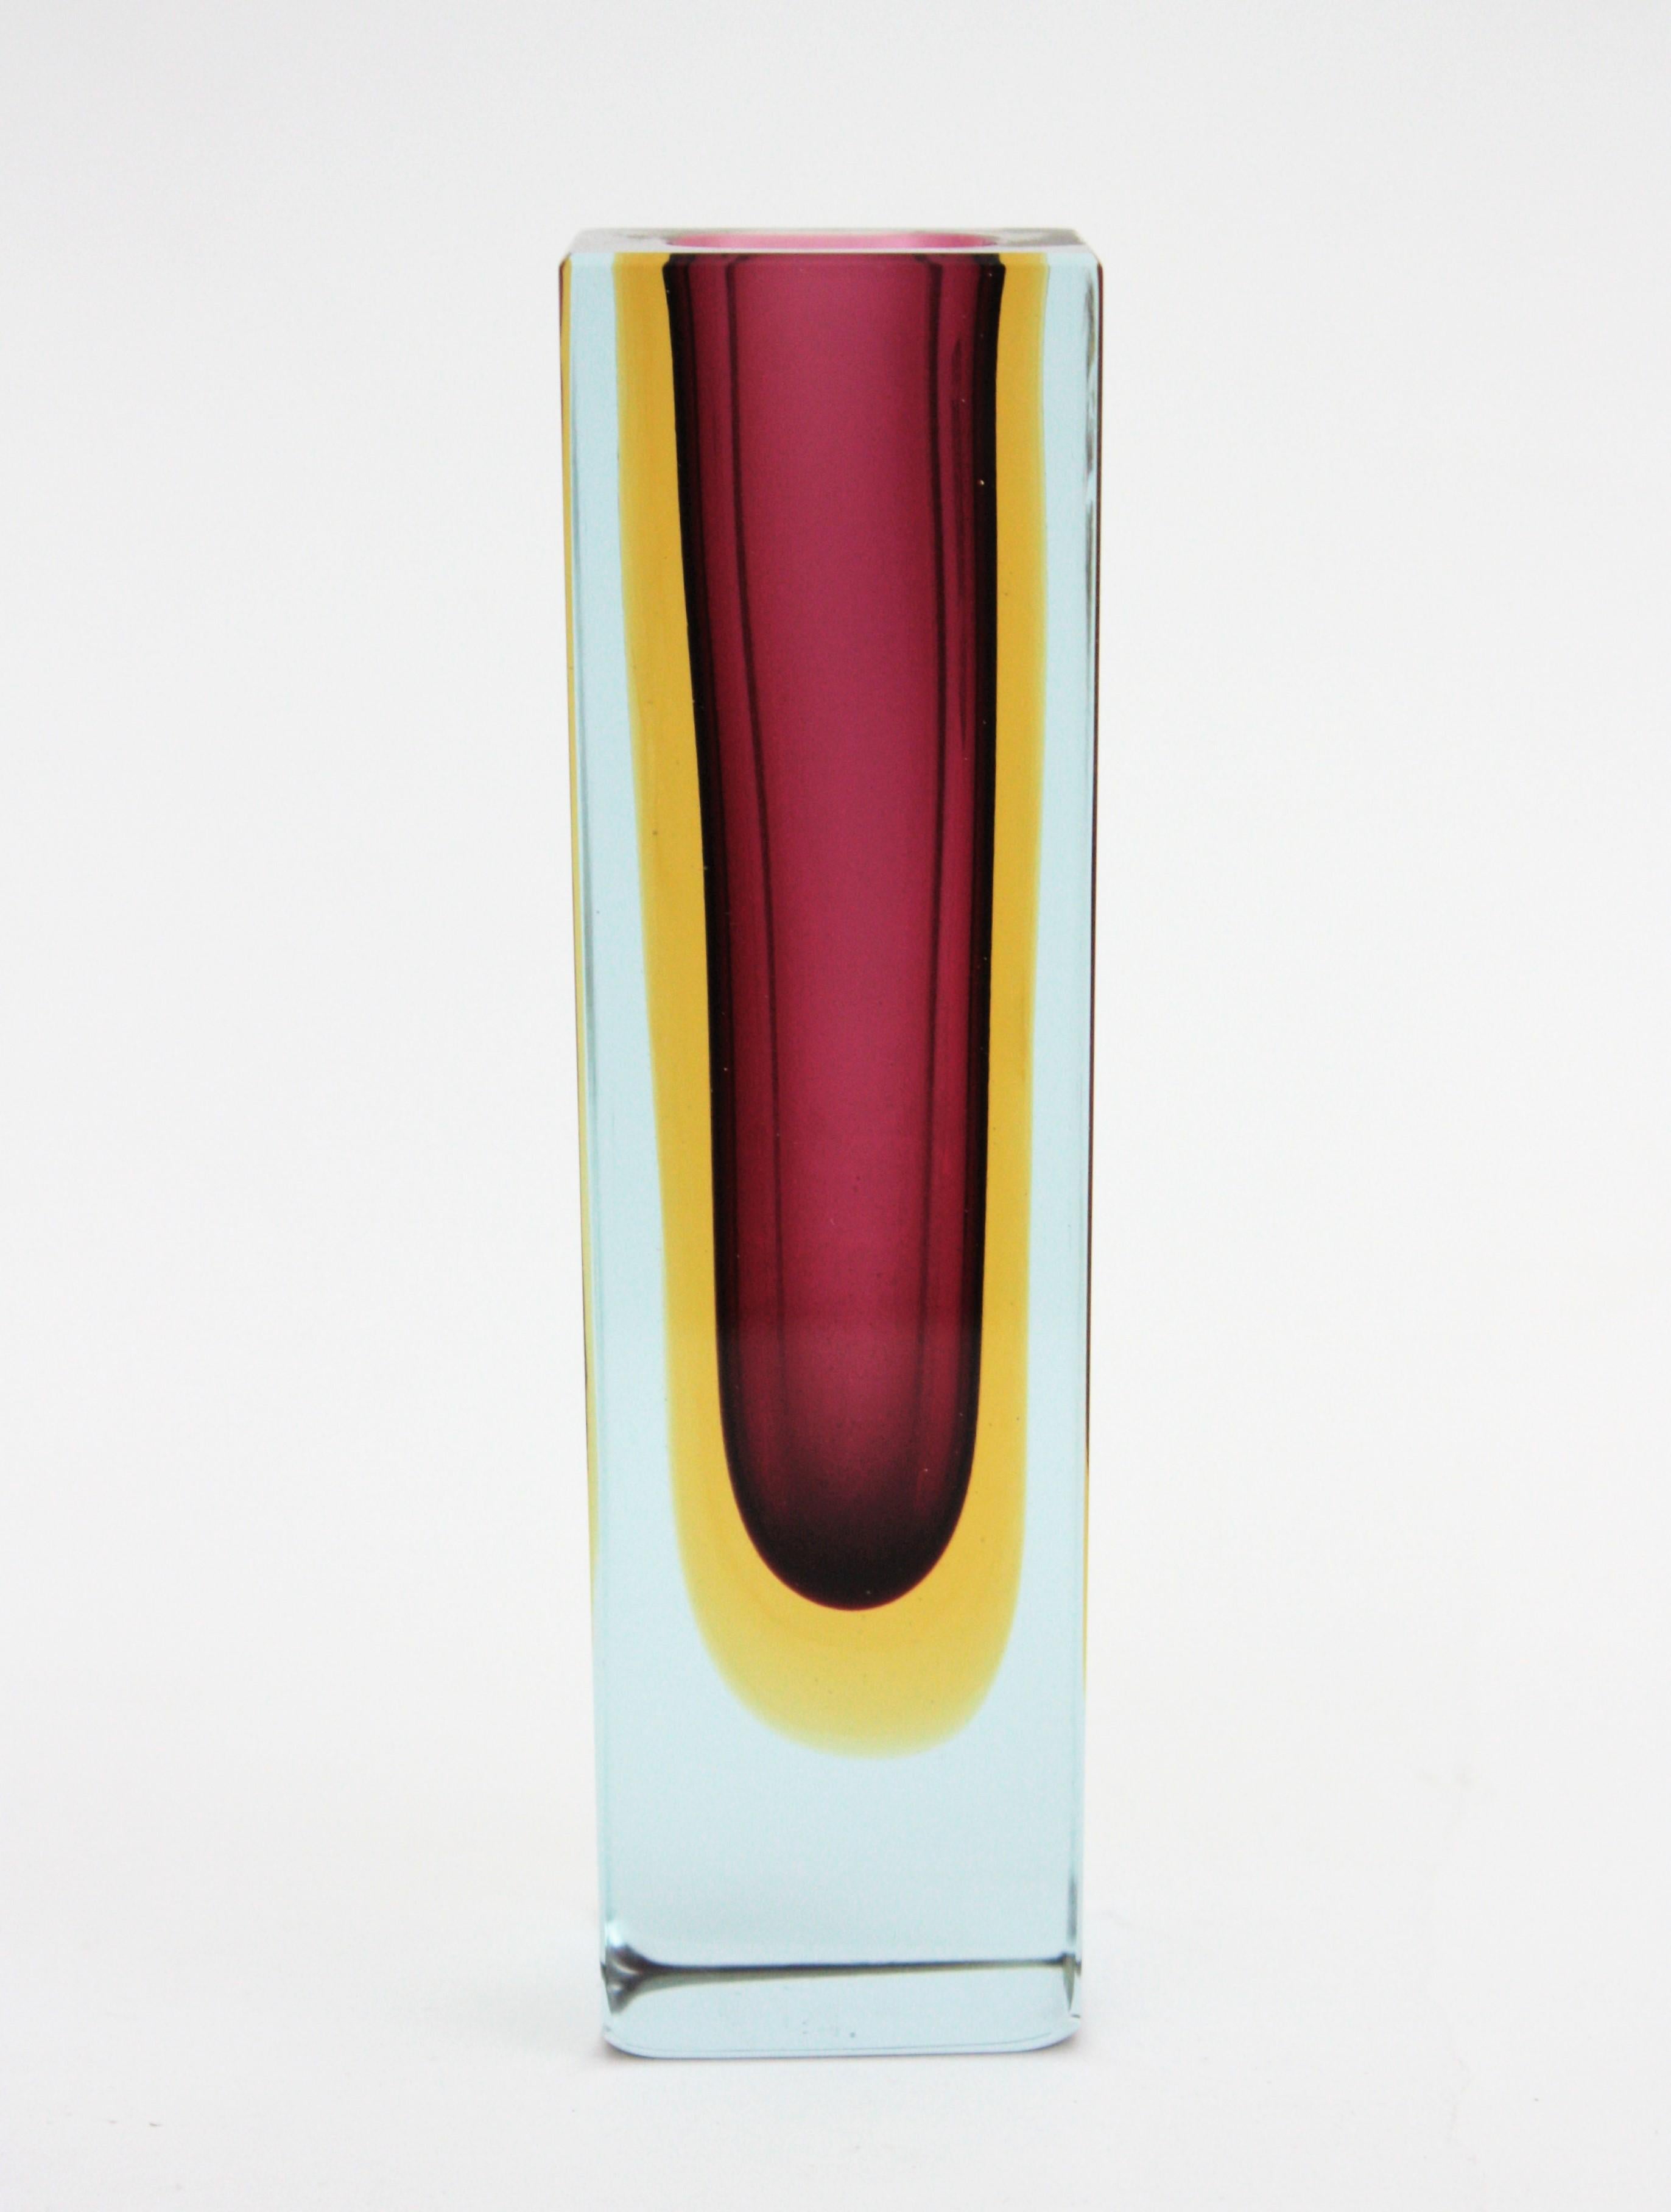 Joli vase en verre Sommerso à facettes en verre violet, jaune et transparent. Attribué à Flavio Poli pour Seguso. Italie, années 1960.
Verre bourgogne / violet avec une couche en verre jaune immergée dans du verre clair selon la technique